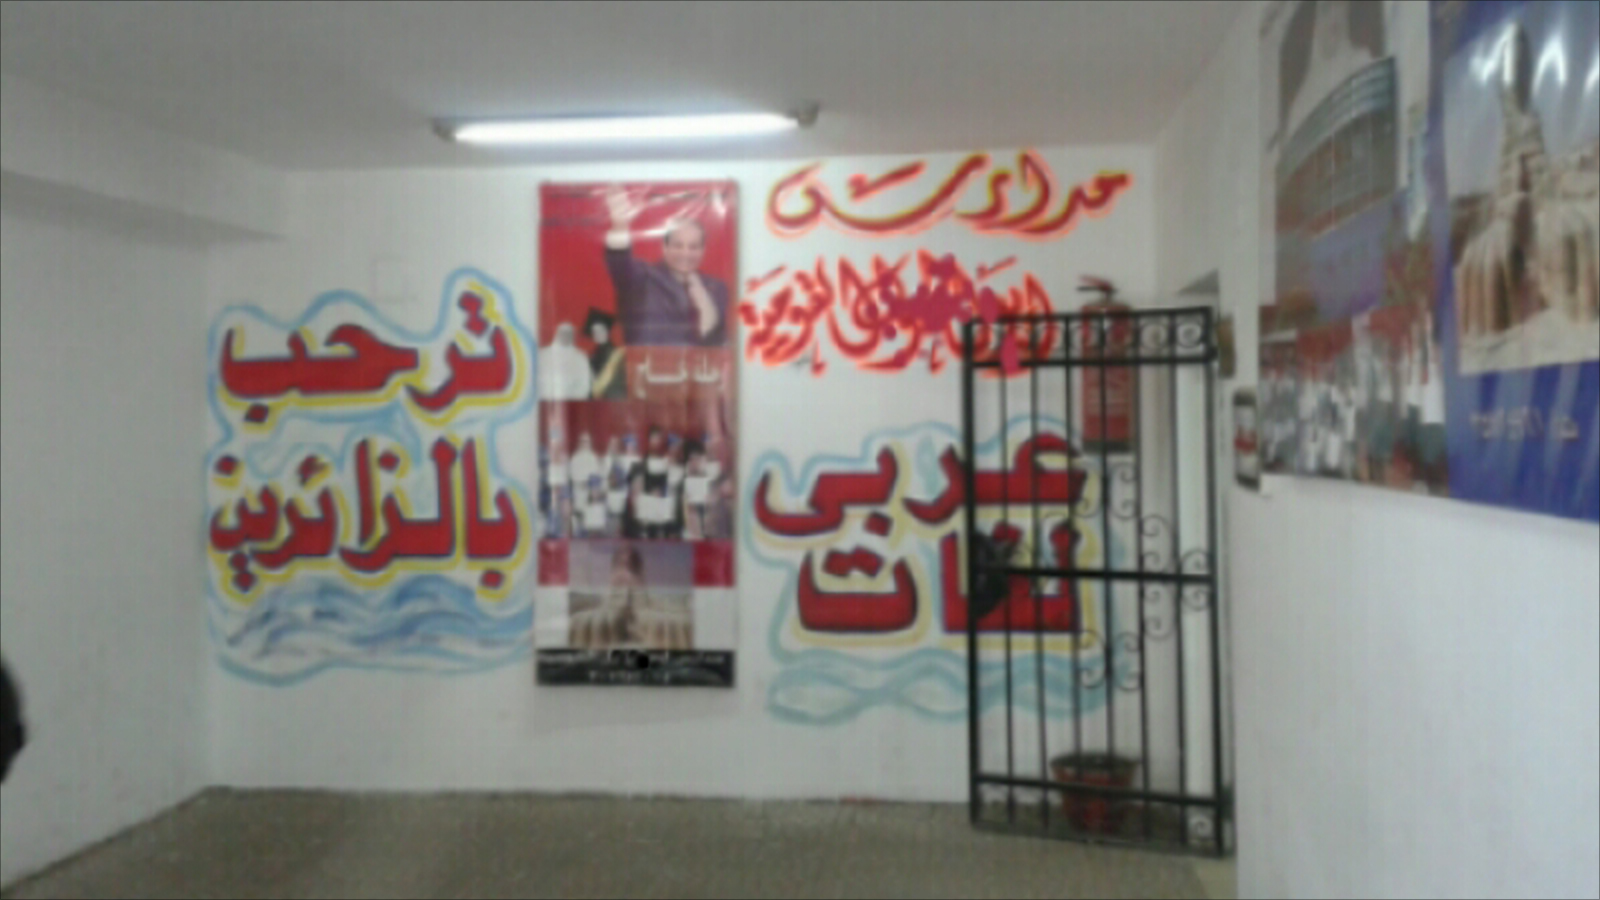 ‪بعض المدارس الخاصة احتمت بصور السيسي من تهمة الانتماء للإخوان لكن ذلك لم يمنع استيلاء وزارة التعليم عليها‬ (الجزيرة)